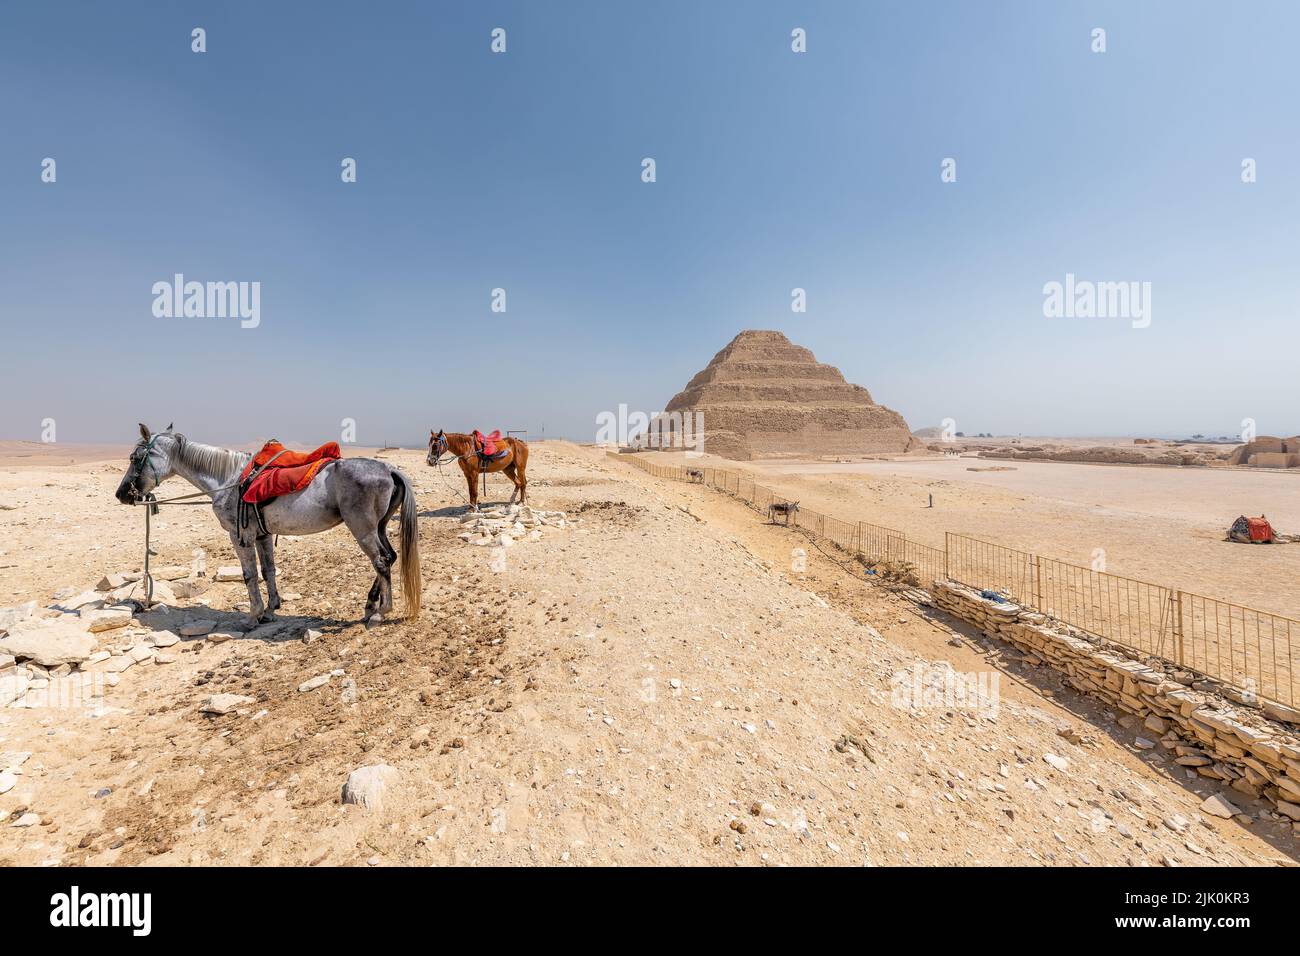 Saqqara, Egitto; 27 luglio 2020 - la piramide a gradoni di Djoser, Saqqara, Egitto Foto Stock